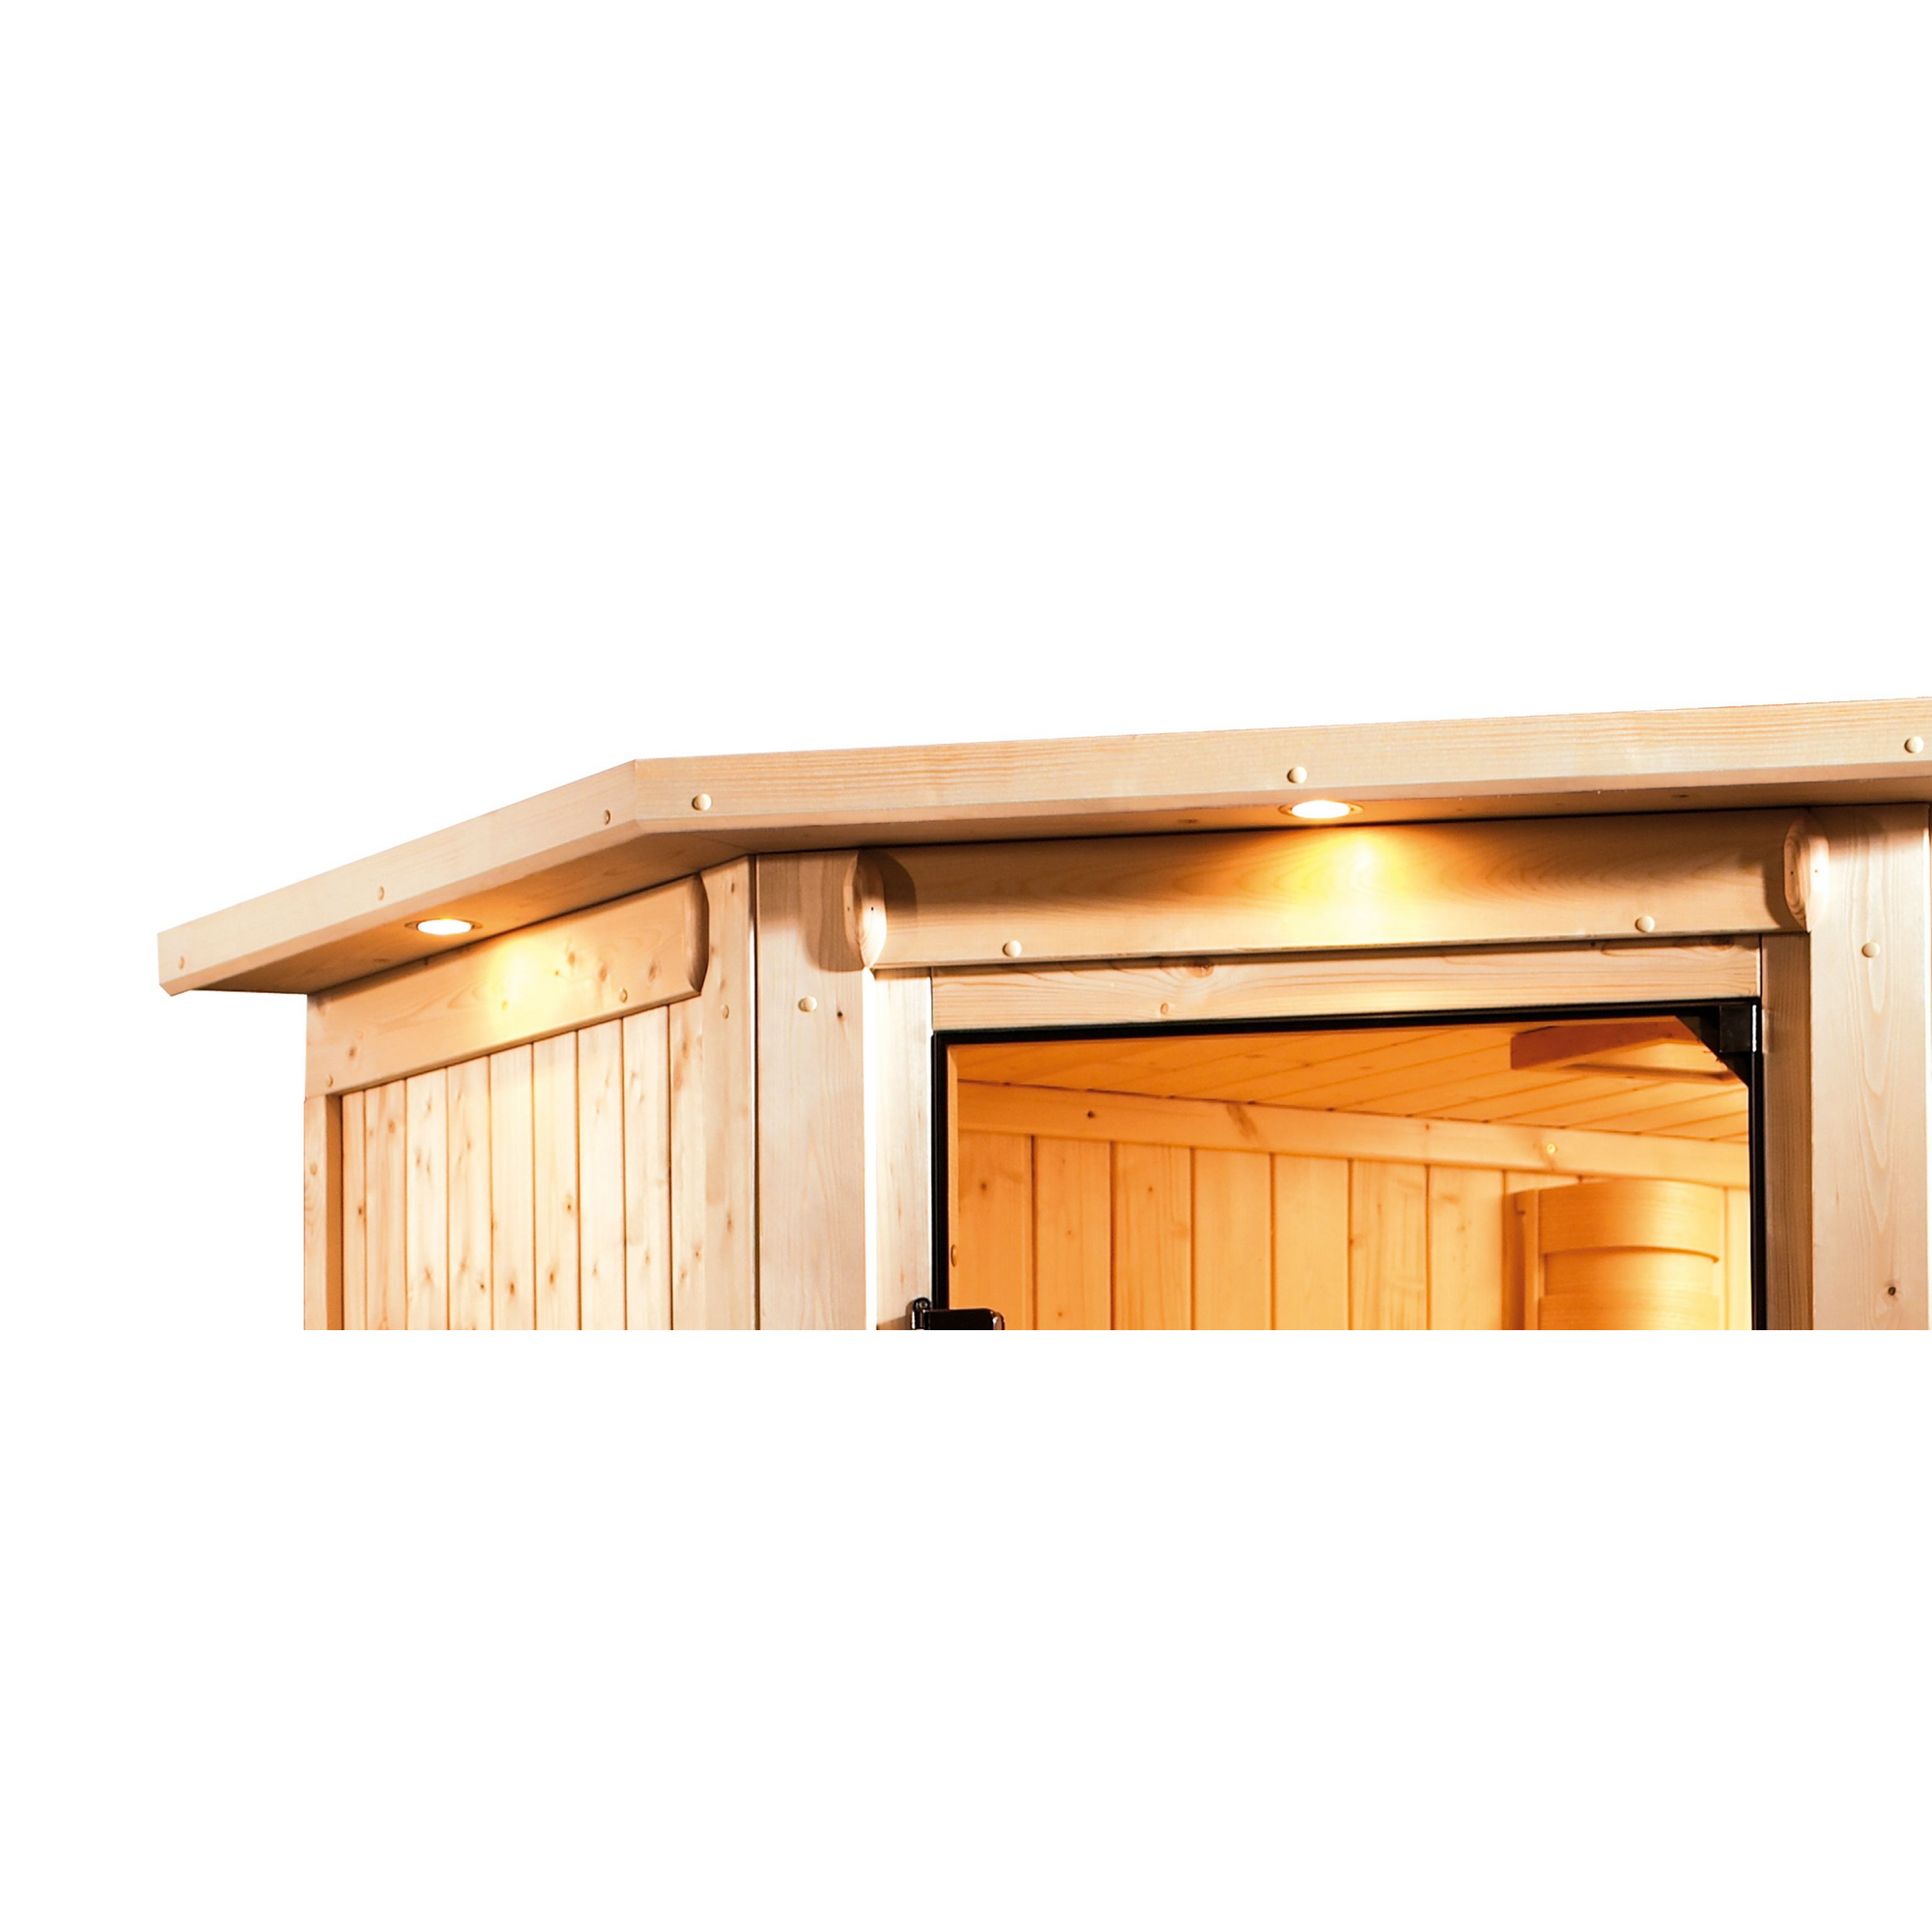 Sauna 'Ariadna 3' naturbelassen mit Kranz und bronzierter Tür 9 kW Ofen externe Steuerung 245 x 210 x 202 cm + product picture